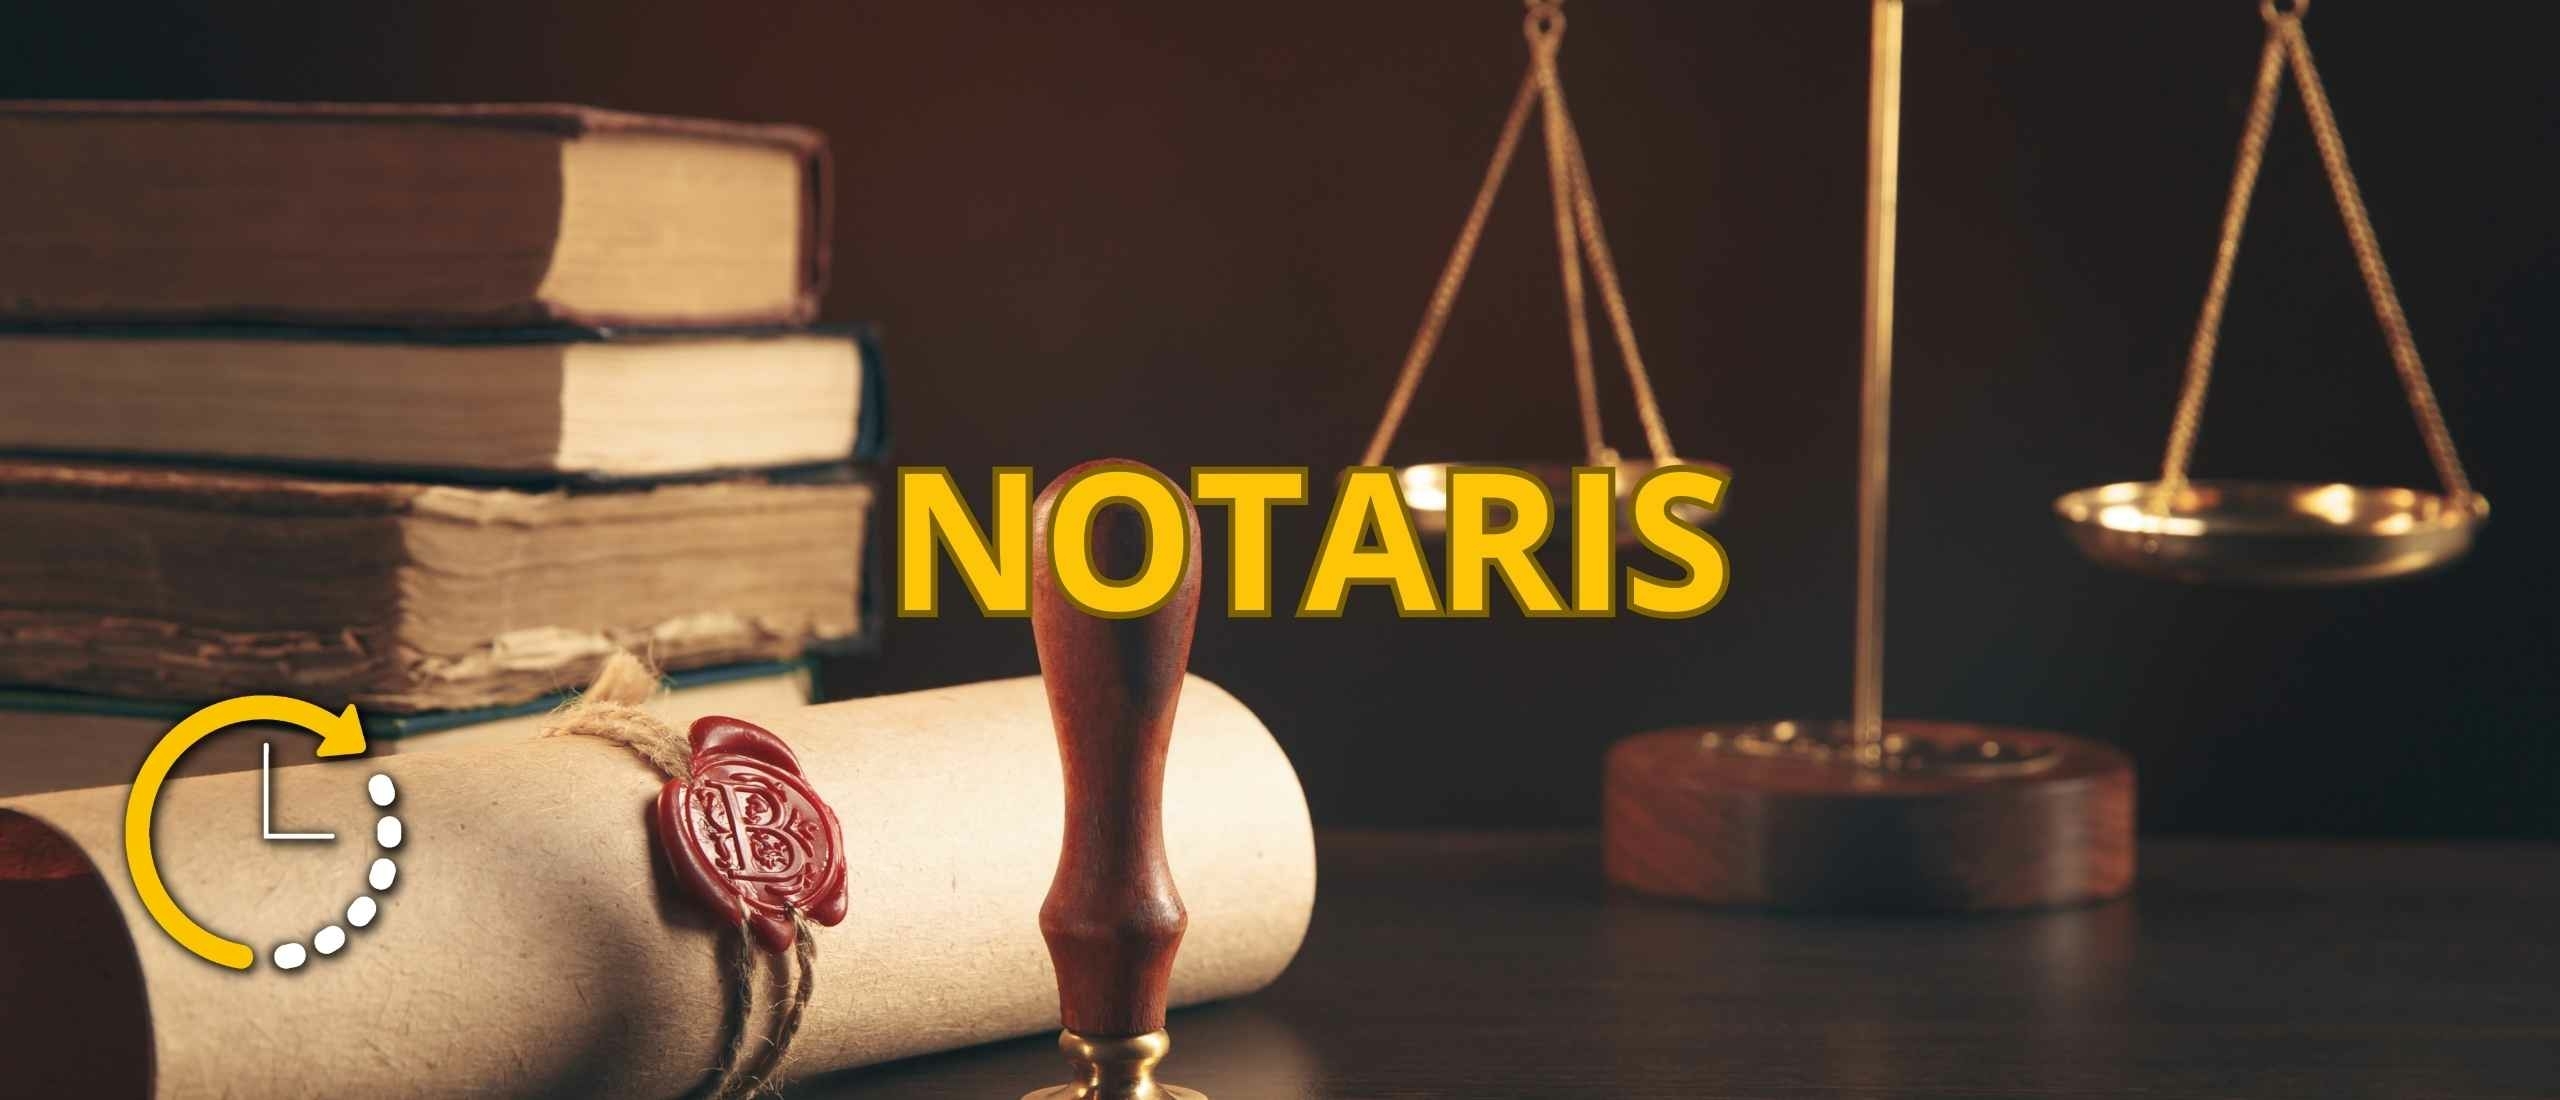 De Rol van de Notaris bij een huis kopen en verkopen